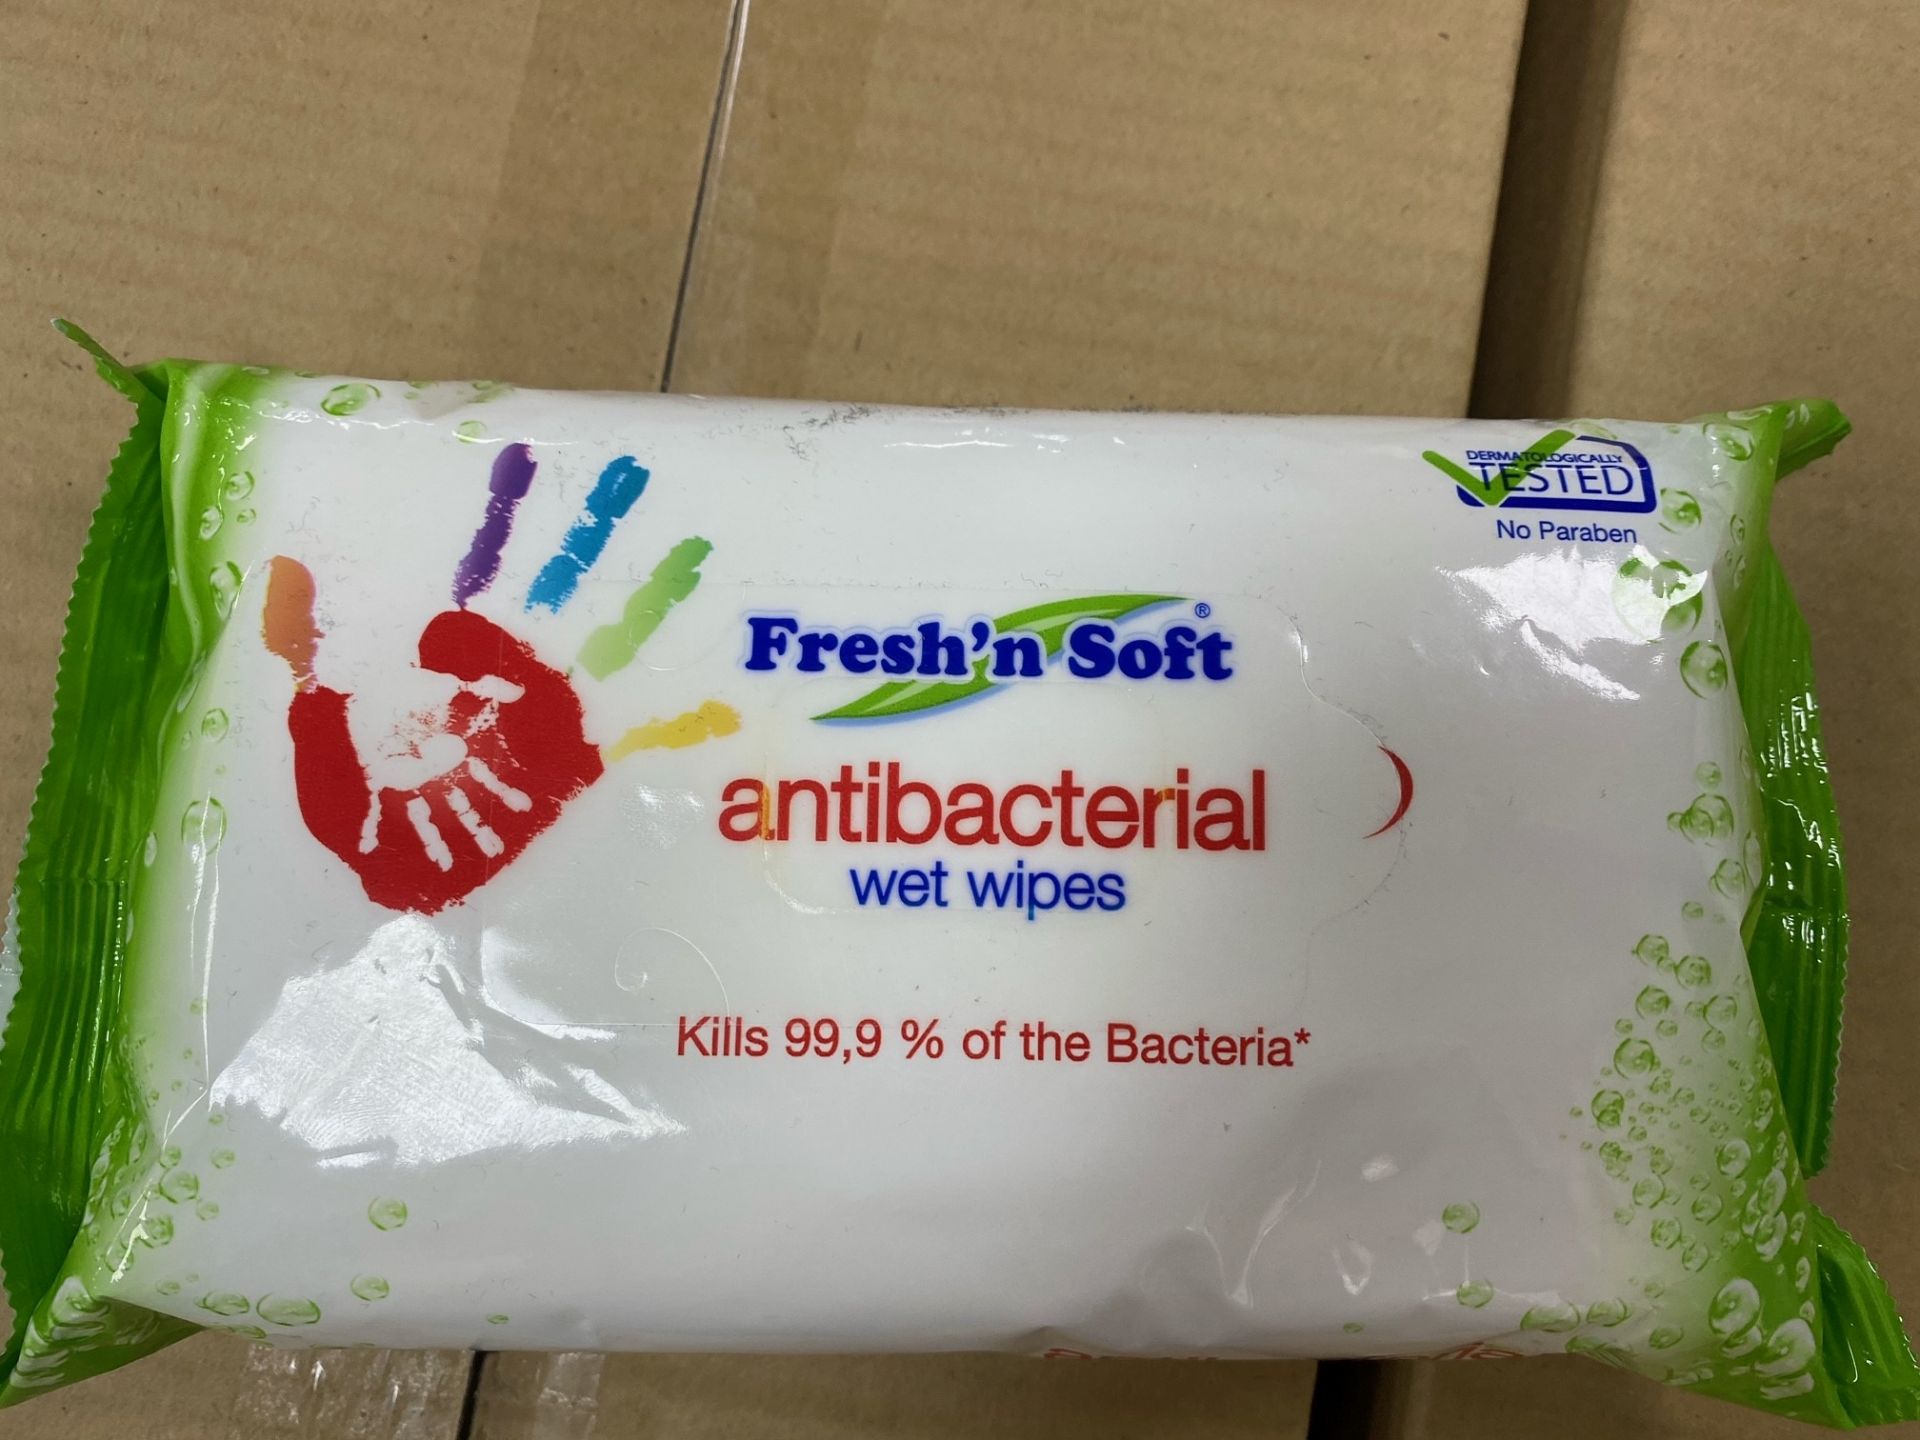 1 Pallet Of New Fresh n soft Antibacterial wipes